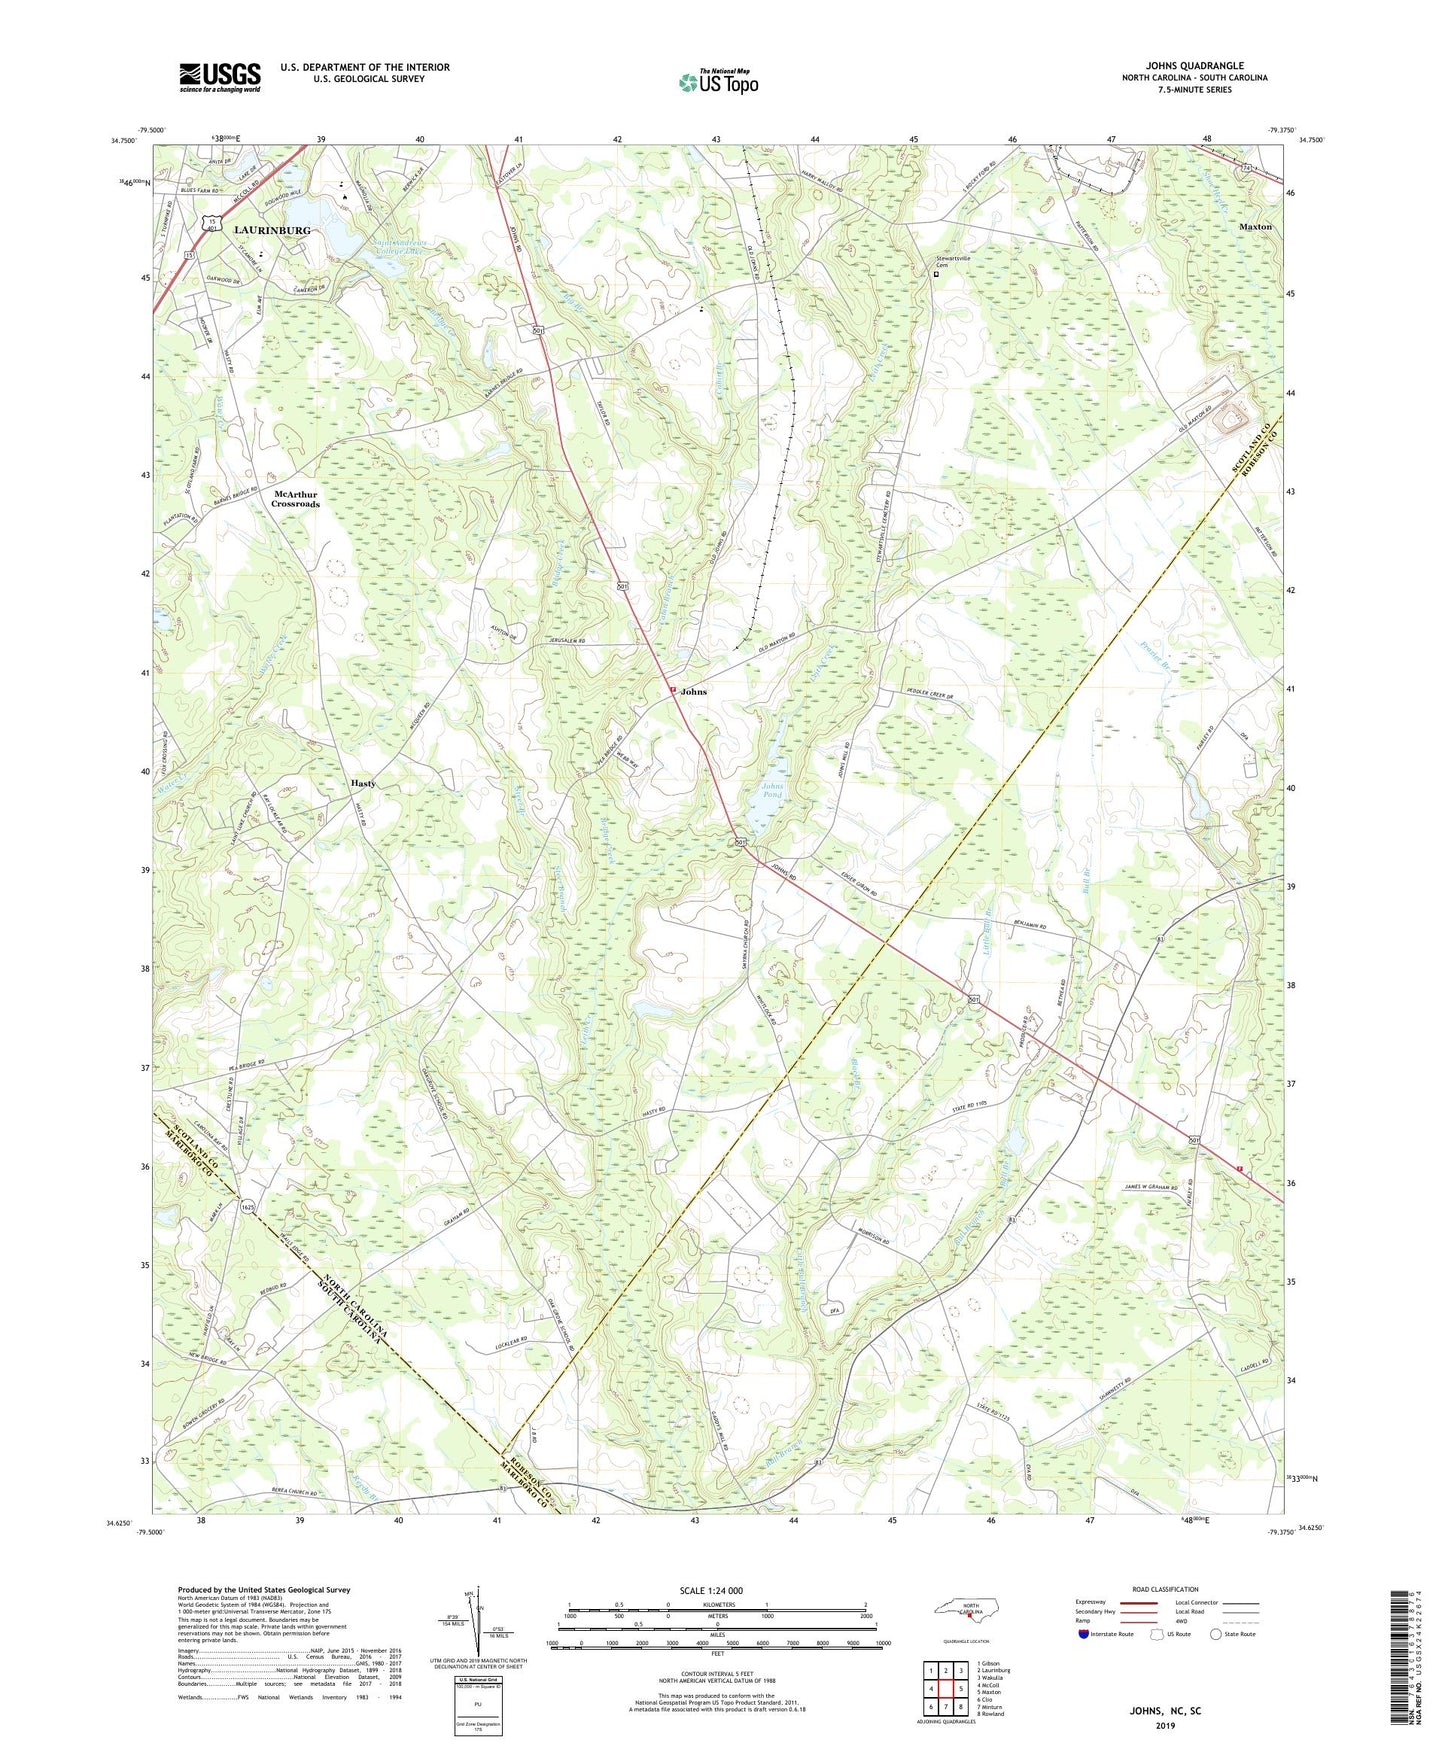 Johns North Carolina US Topo Map Image